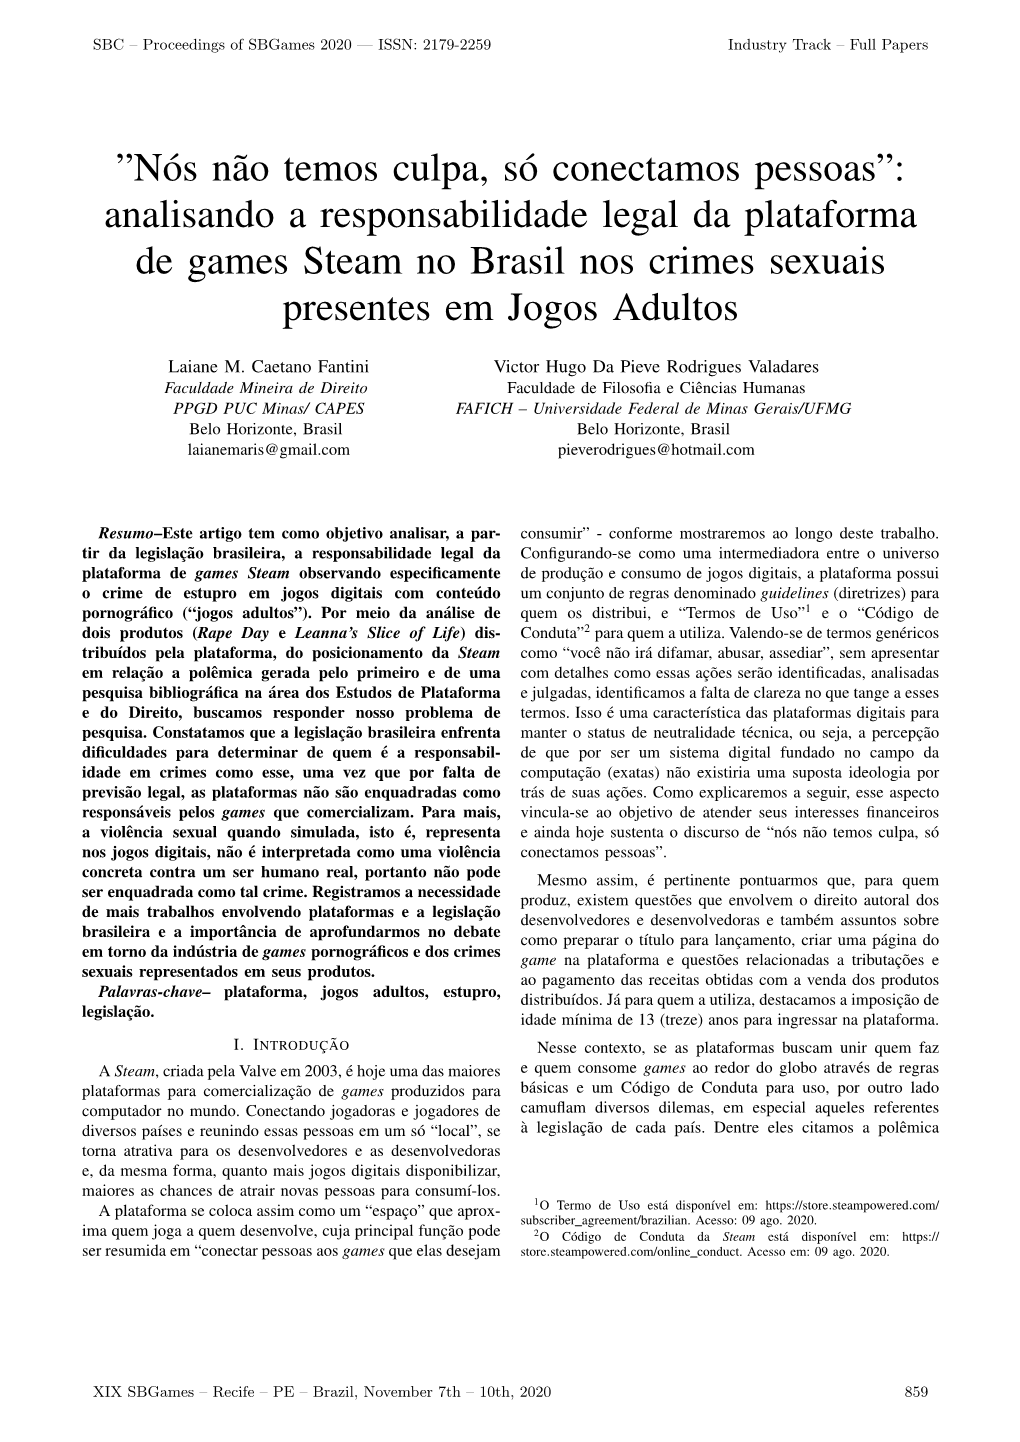 Analisando a Responsabilidade Legal Da Plataforma De Games Steam No Brasil Nos Crimes Sexuais Presentes Em Jogos Adultos